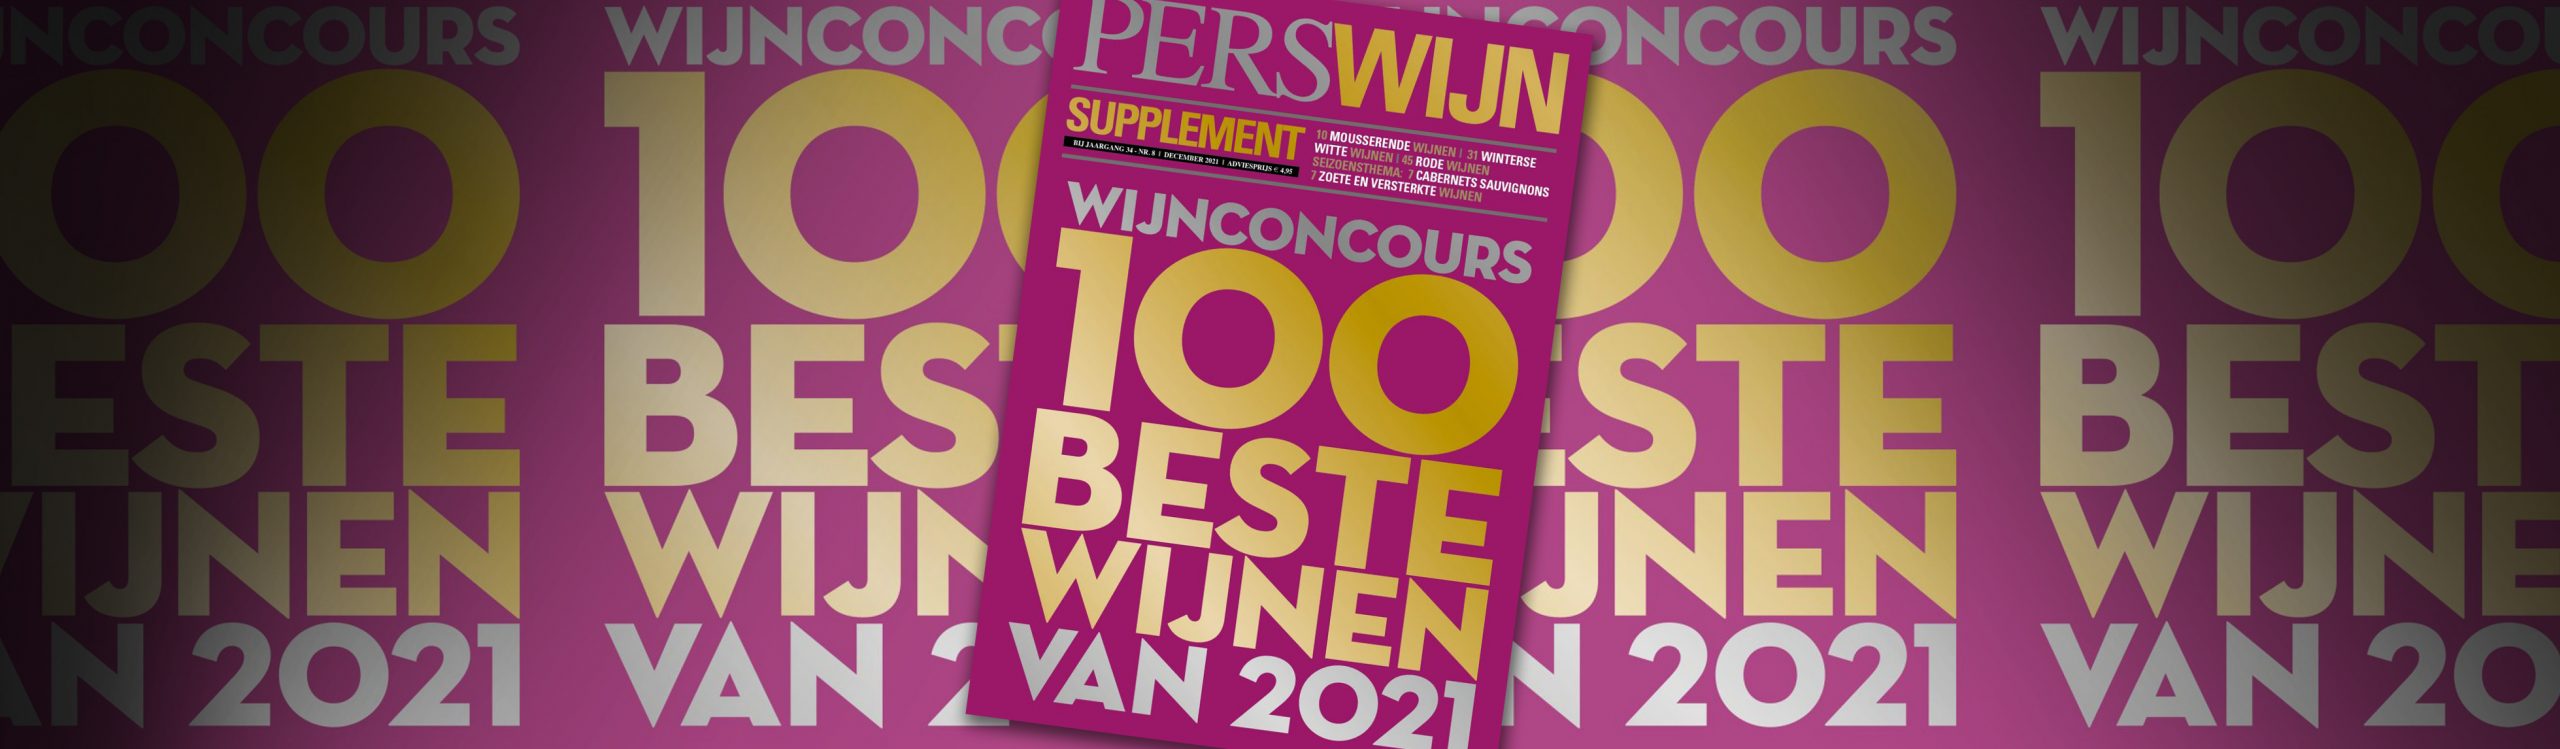 Laurent-Perrier en Clement winnaars Perswijn Wijnconcours 2021